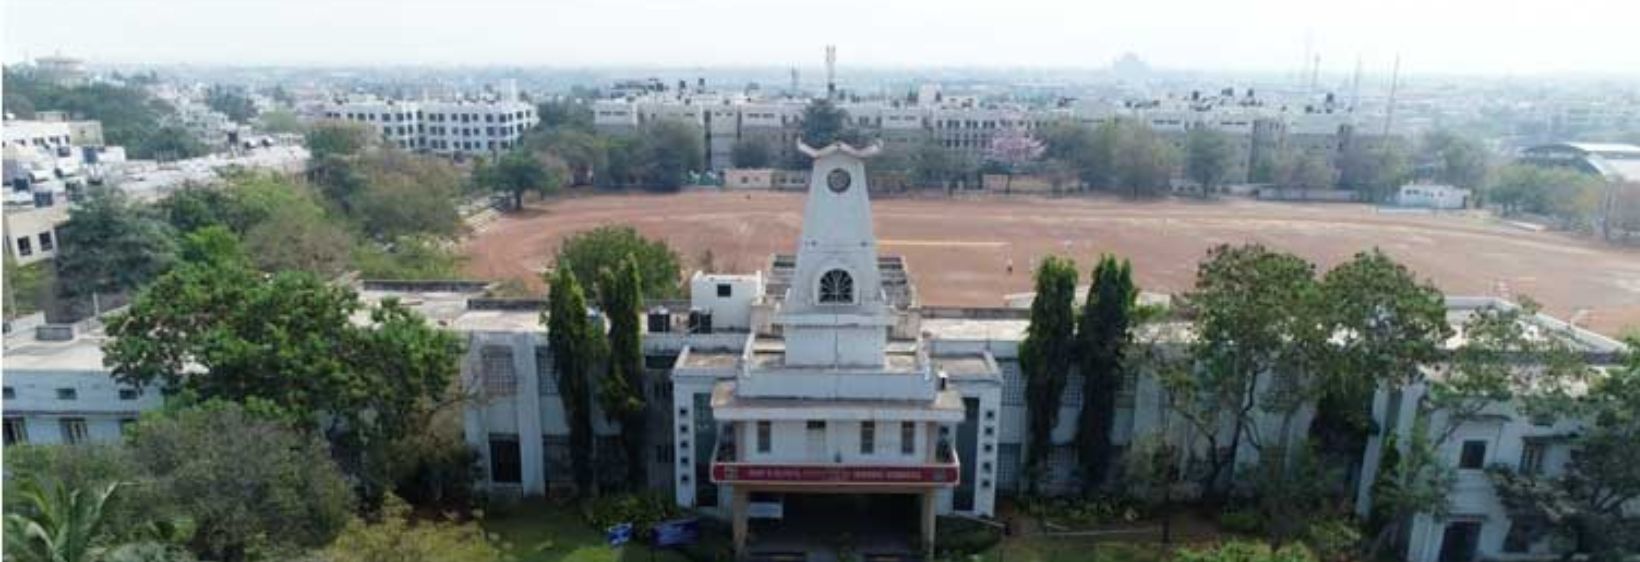 BLDEA's Shri B M Patil Institute of Nursing Sciences - Bijapur